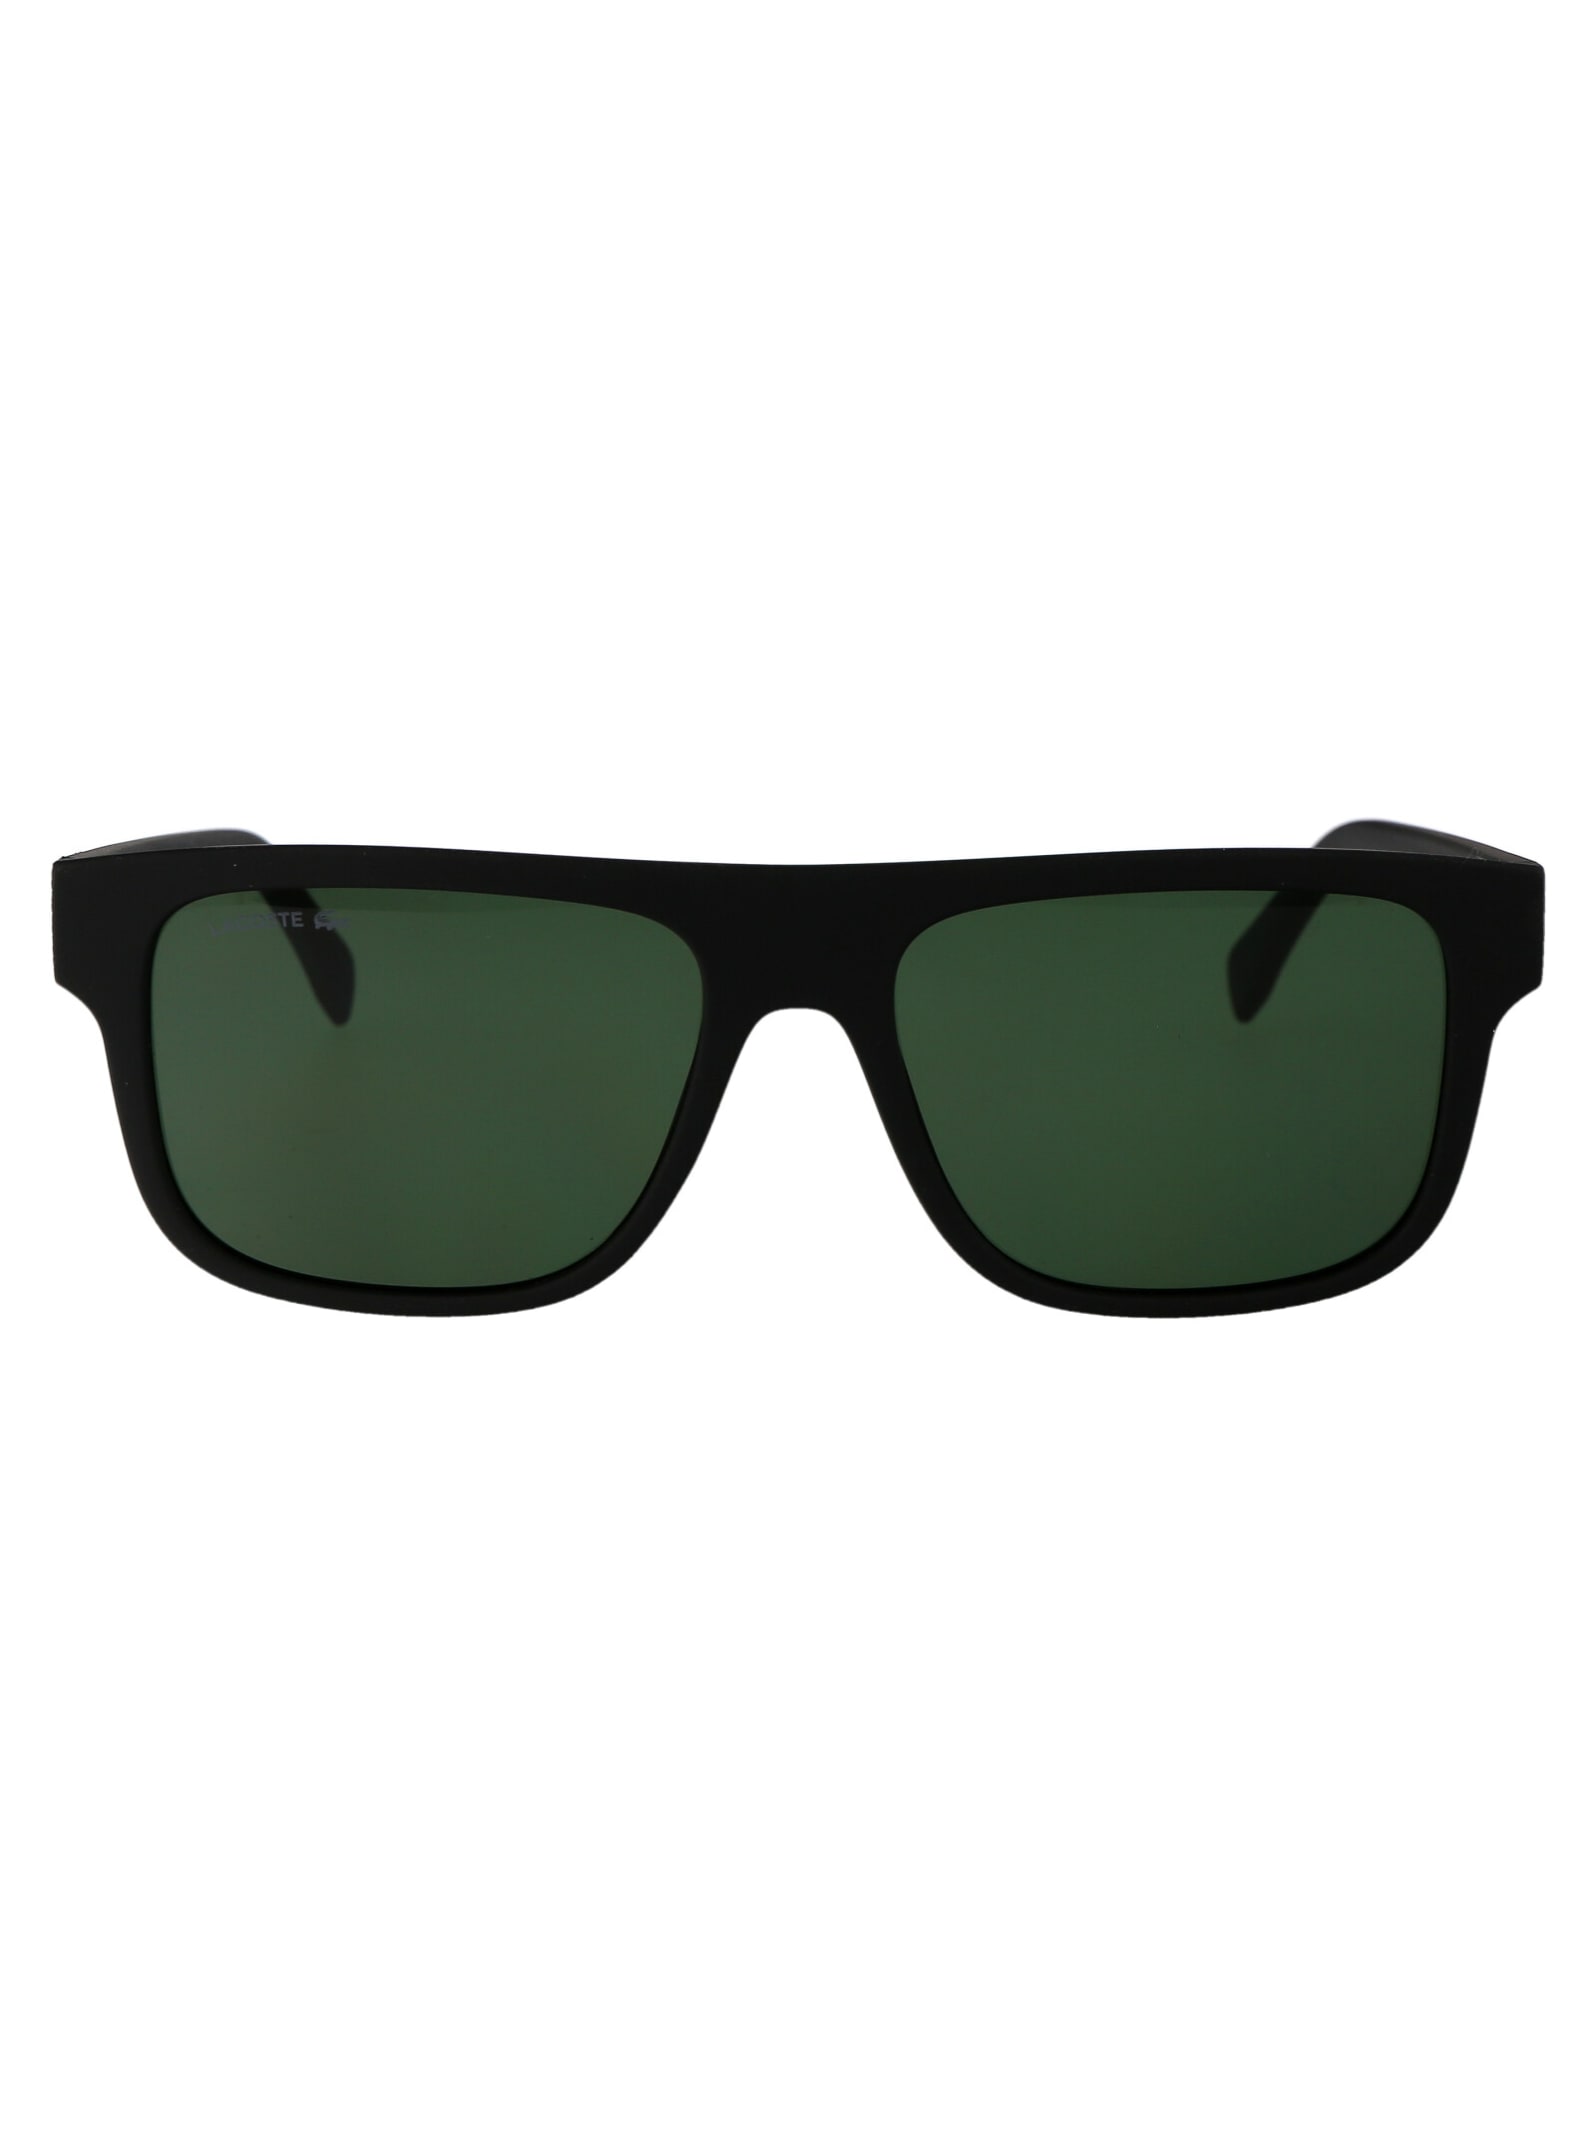 L6001s Sunglasses